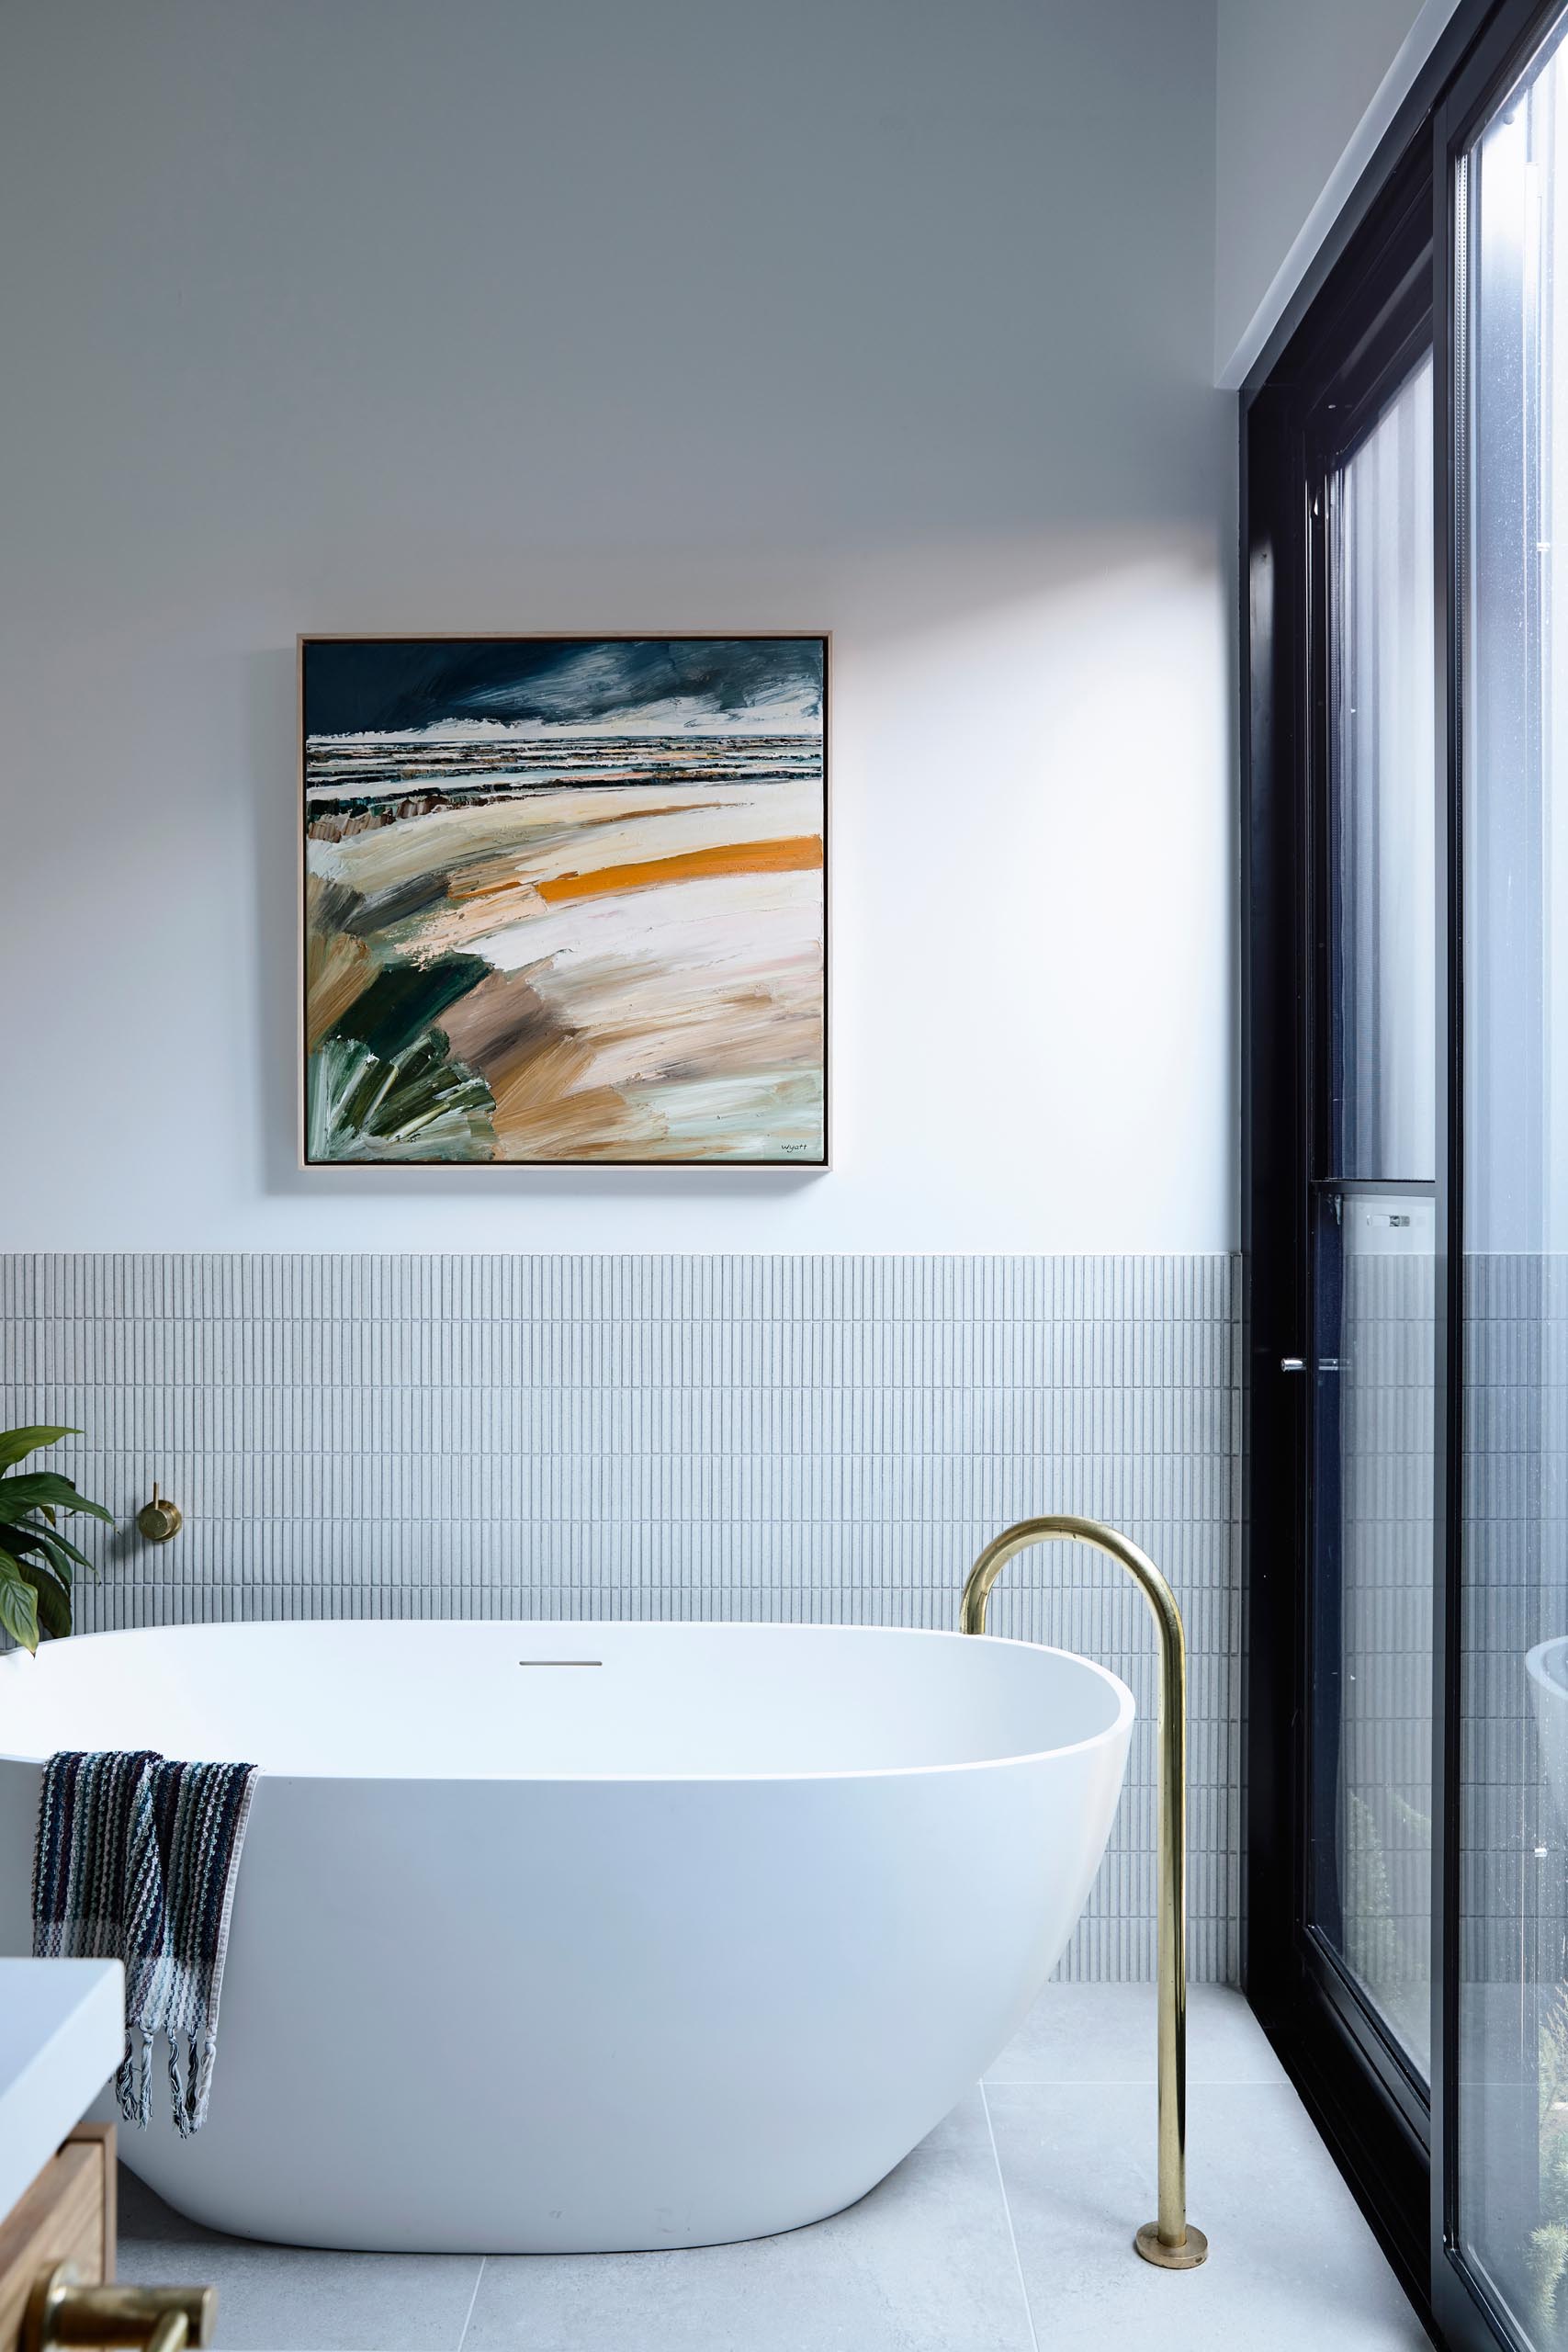 Phòng tắm hiện đại với bồn tắm màu trắng có chân đế độc đáo có nền là những viên gạch hình chữ nhật nhỏ theo bố cục thẳng đứng.